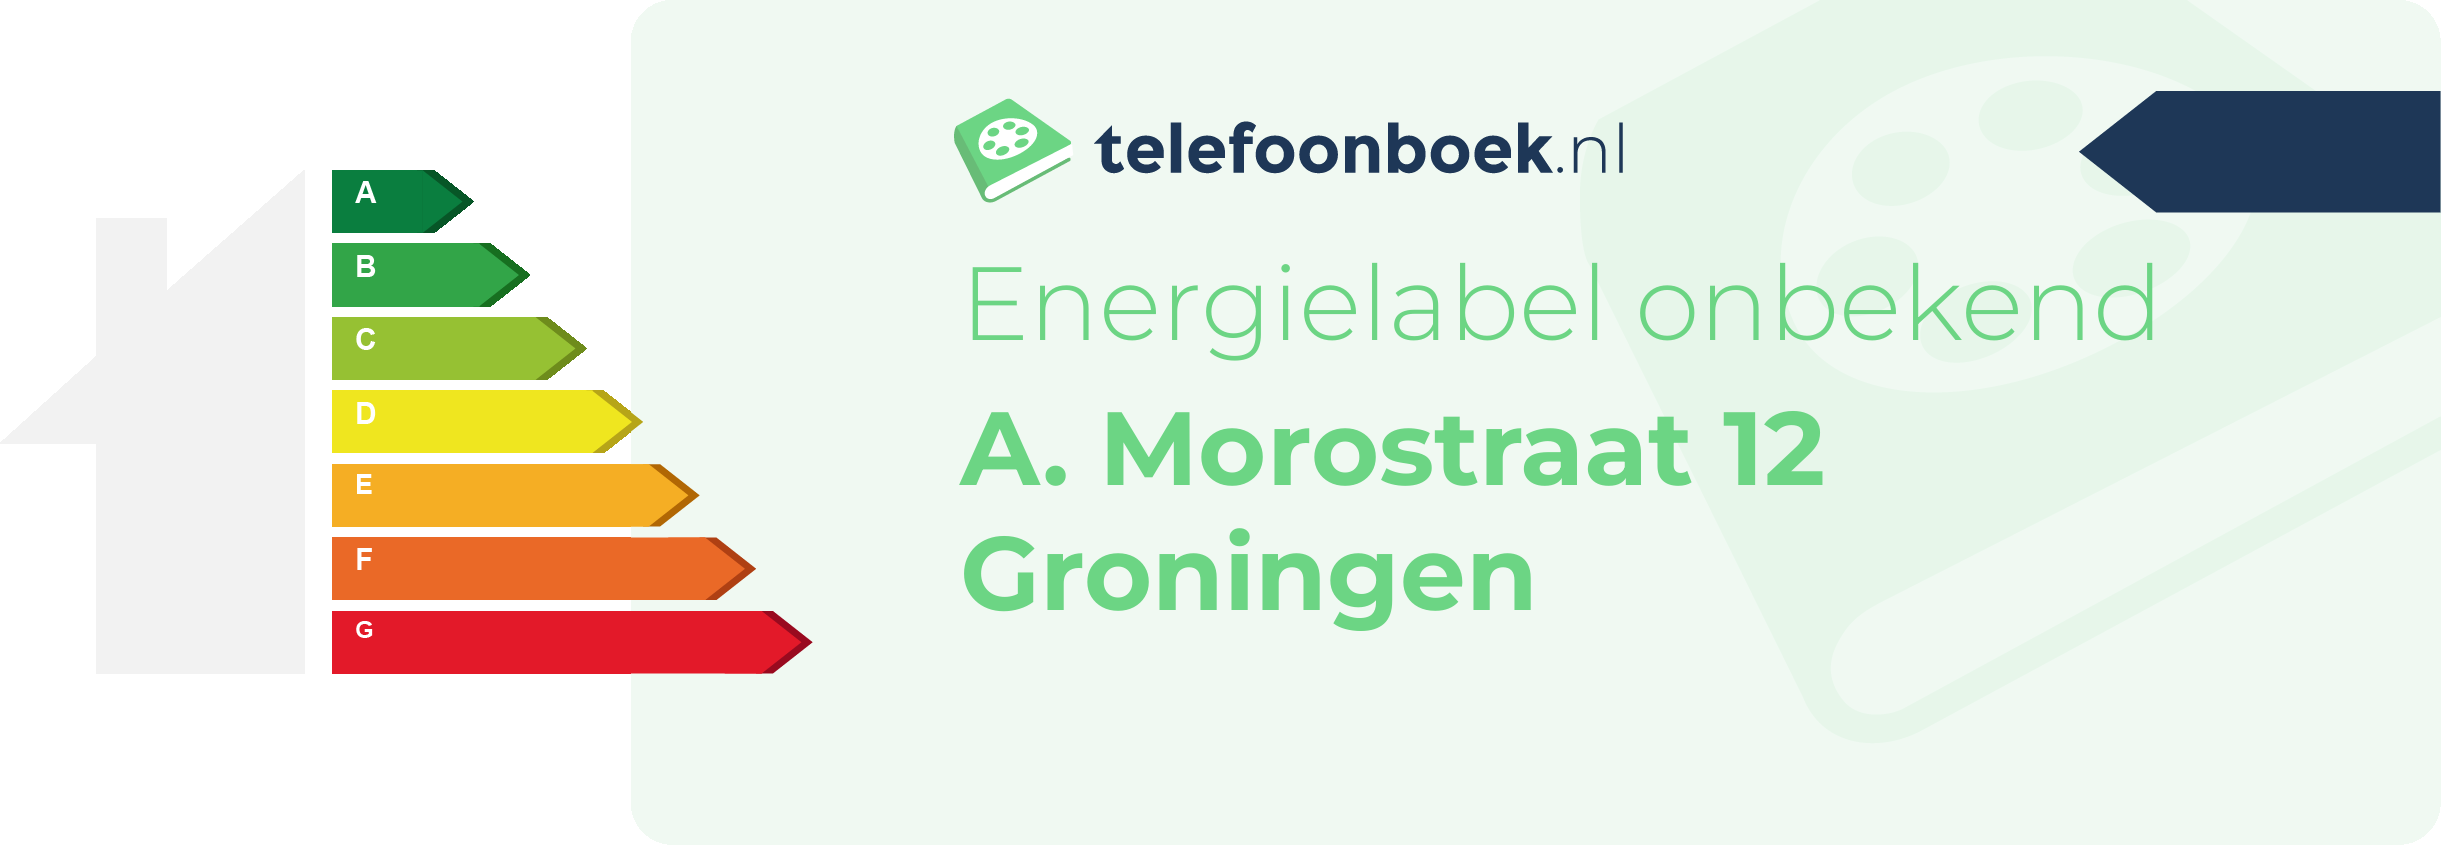 Energielabel A. Morostraat 12 Groningen